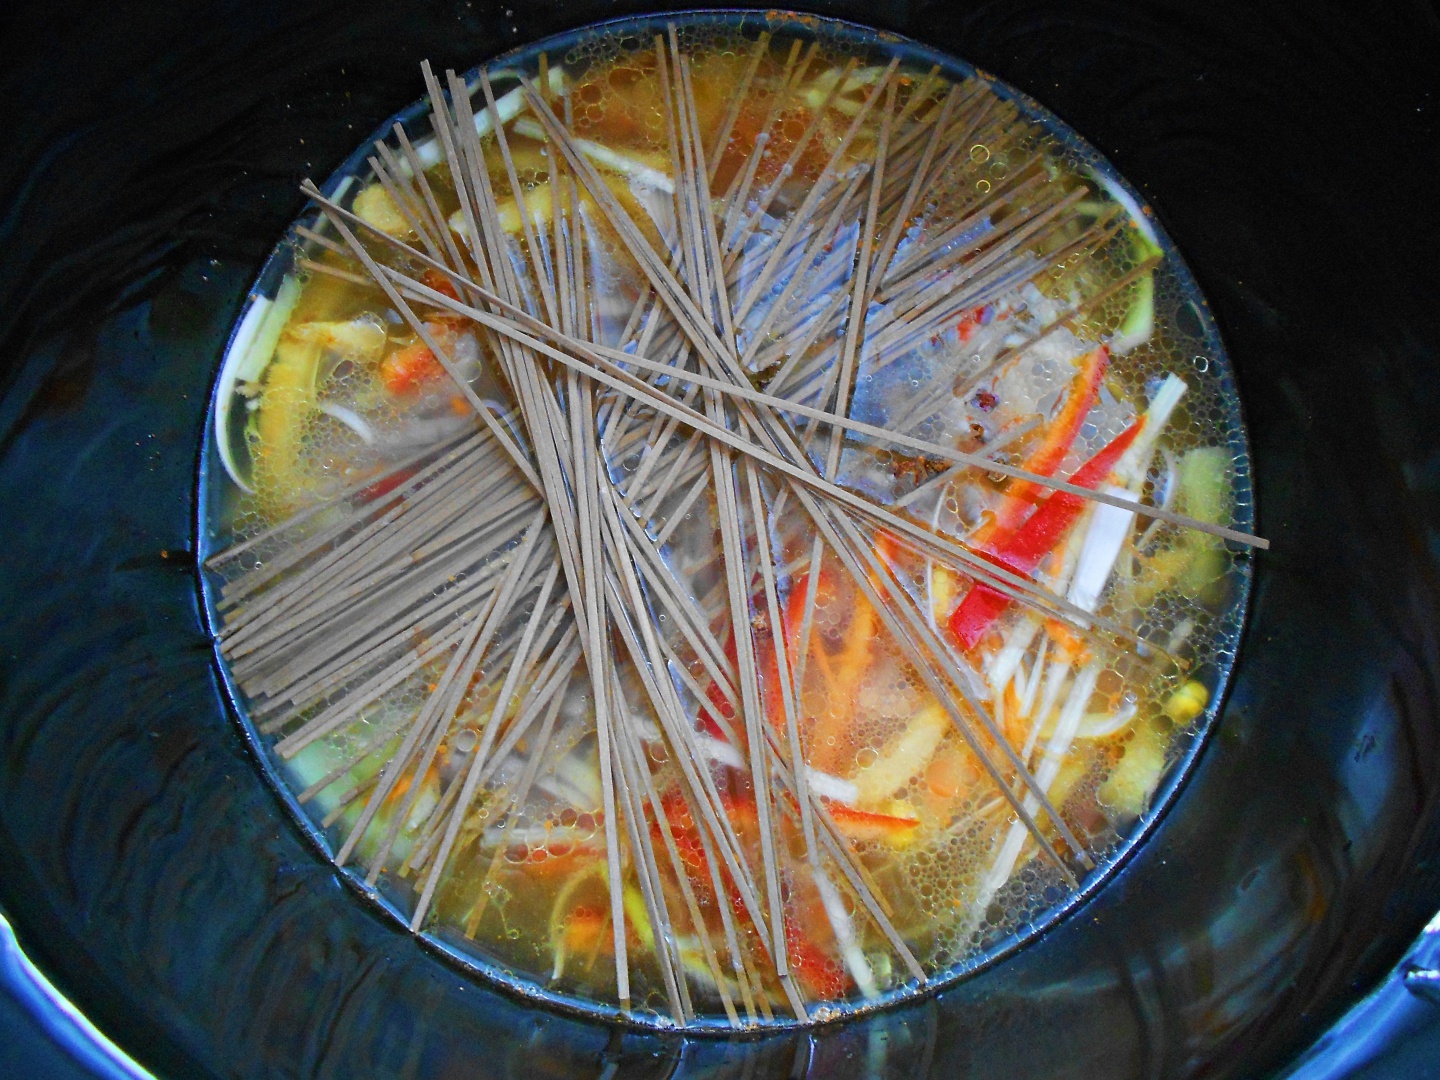 Supă de rață în stil asiatic la Crock-Pot